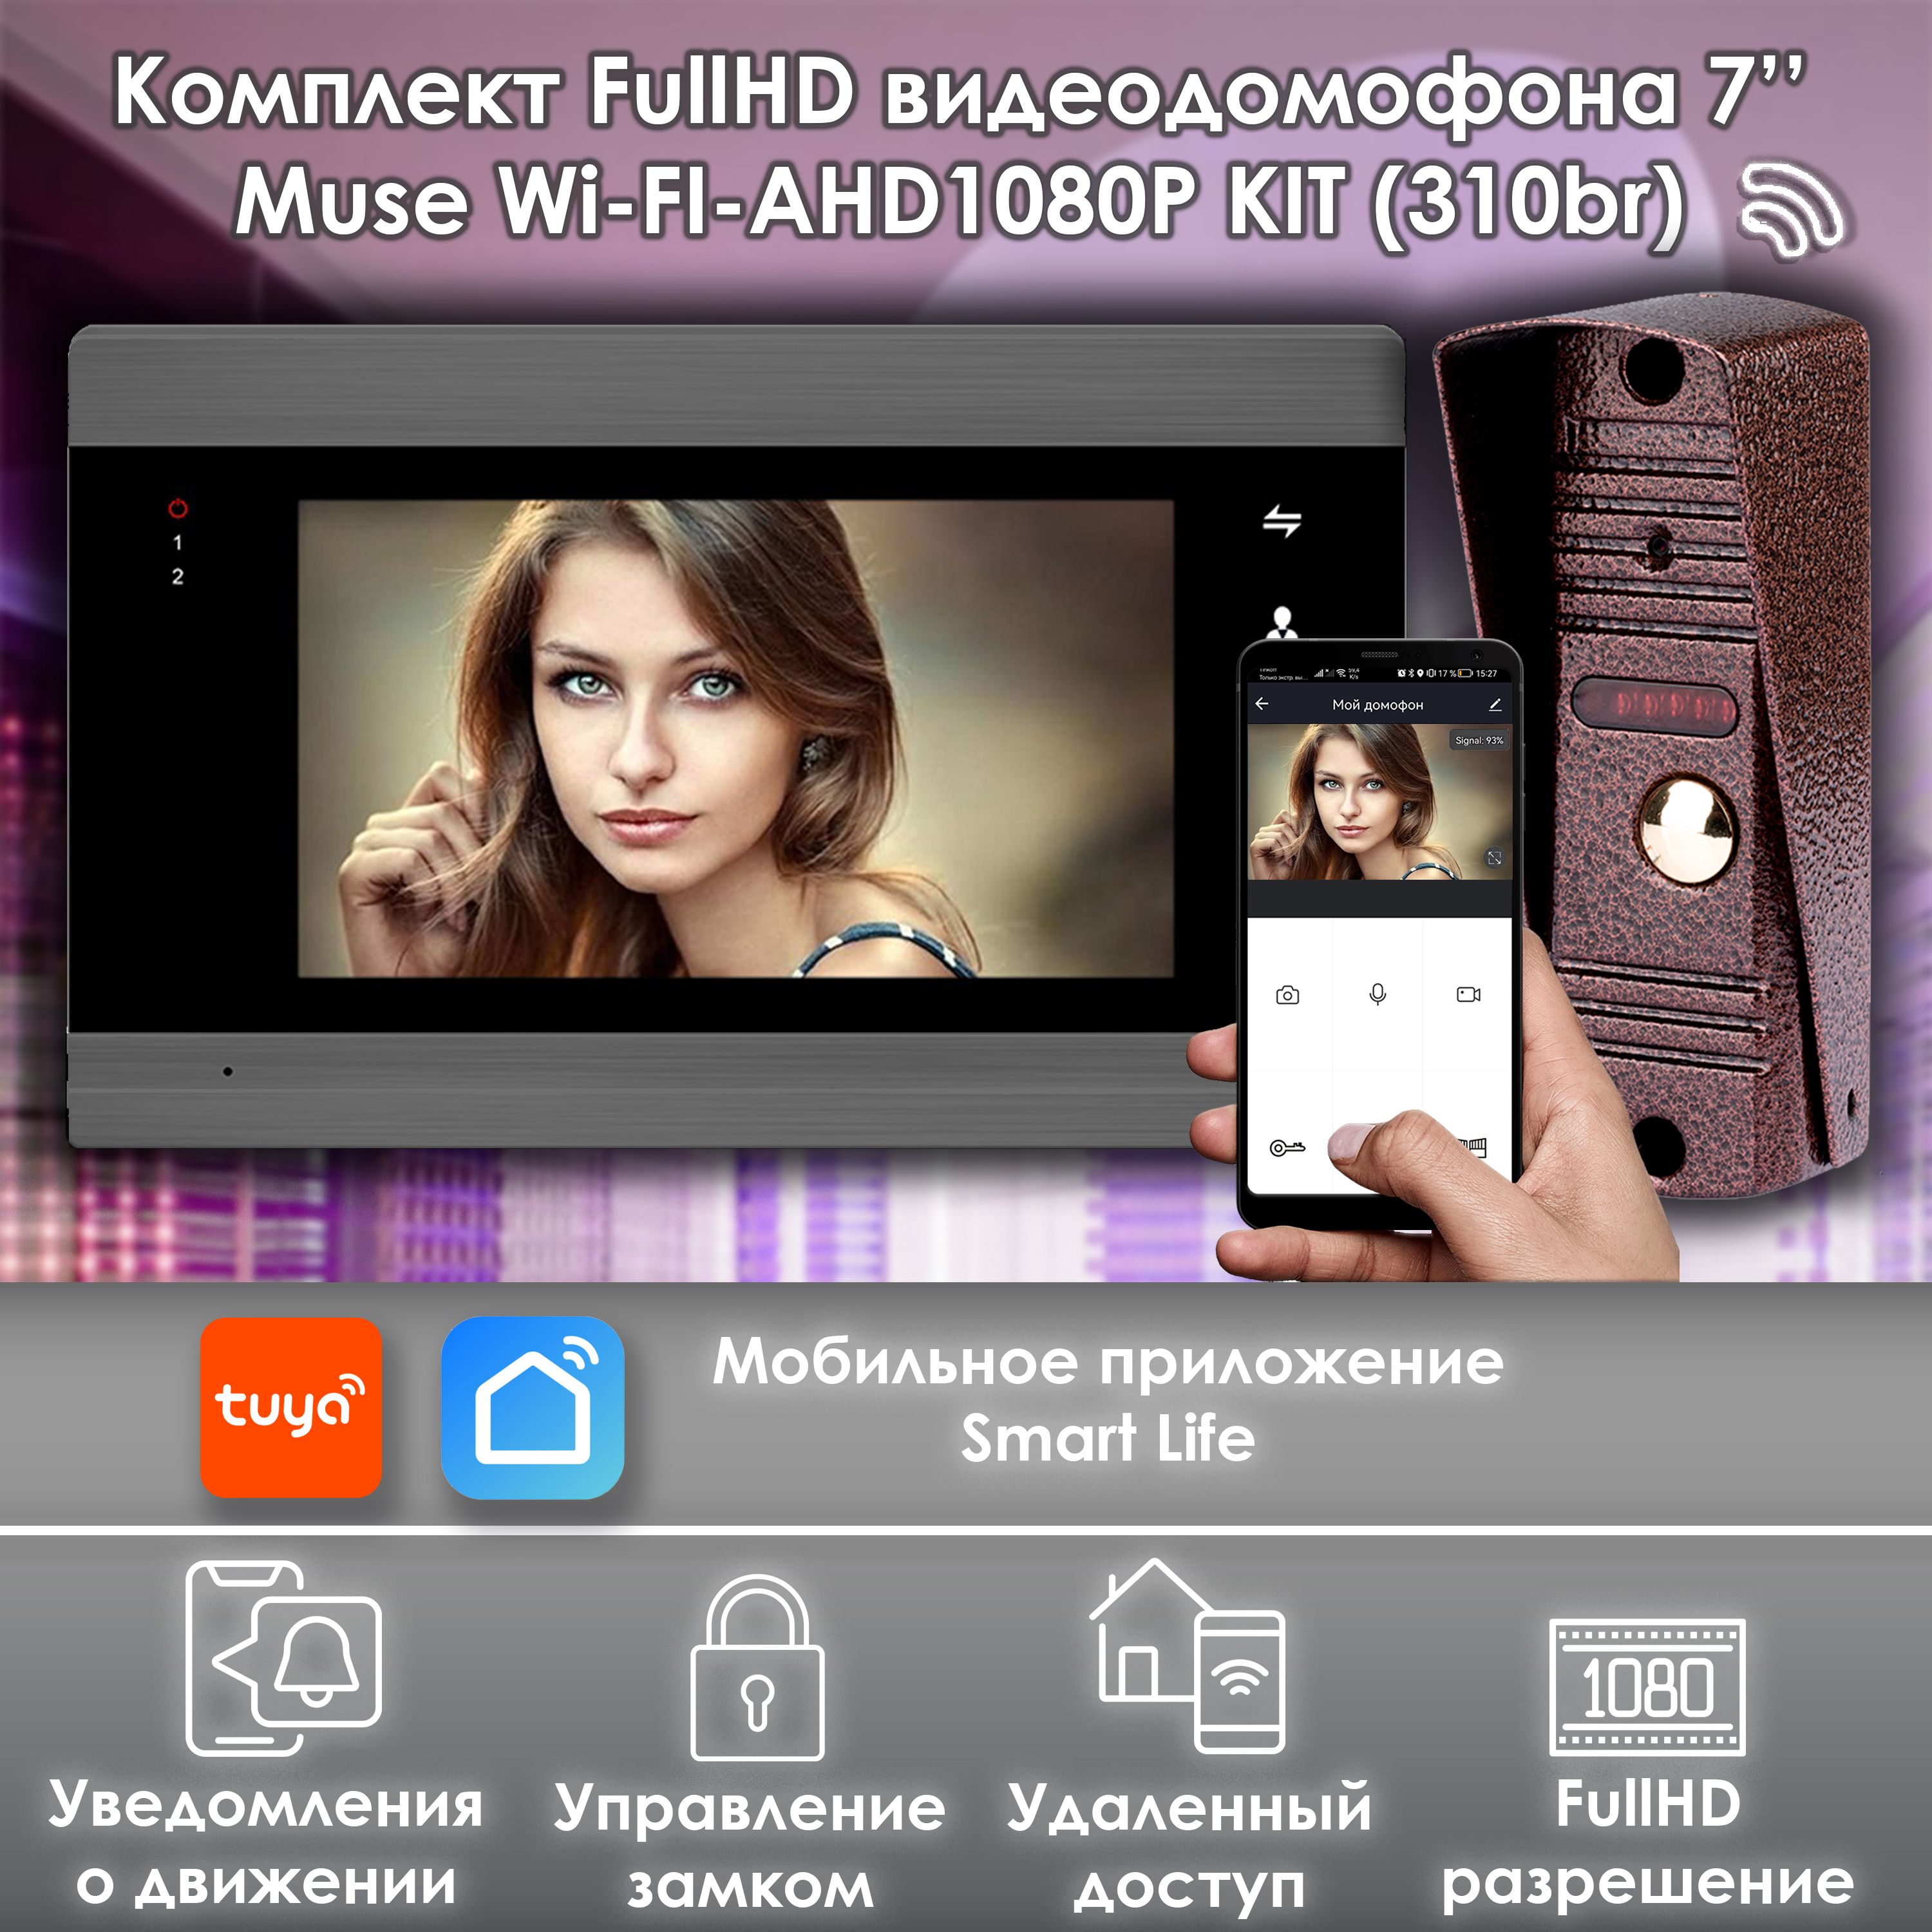 комплект видеодомофона alfavision olesya wi fi ahd1080p full hd 310br серый 7 дюймов Комплект видеодомофона Alfavision MUSE WIFI-KIT (310br) Full HD 7 дюймов